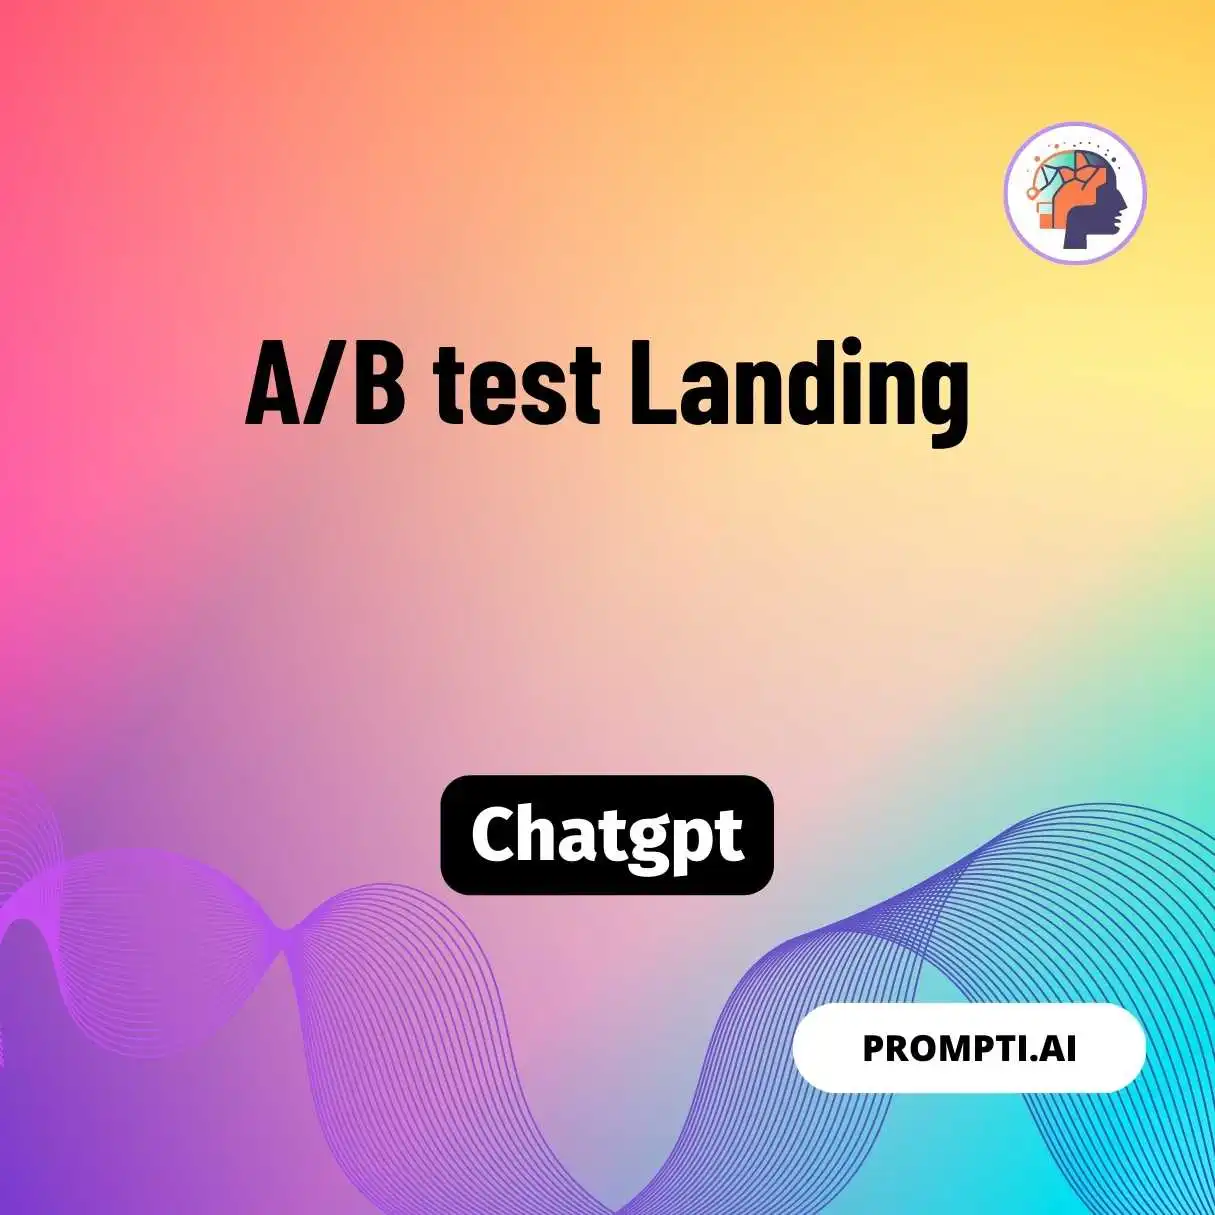 A/B test Landing